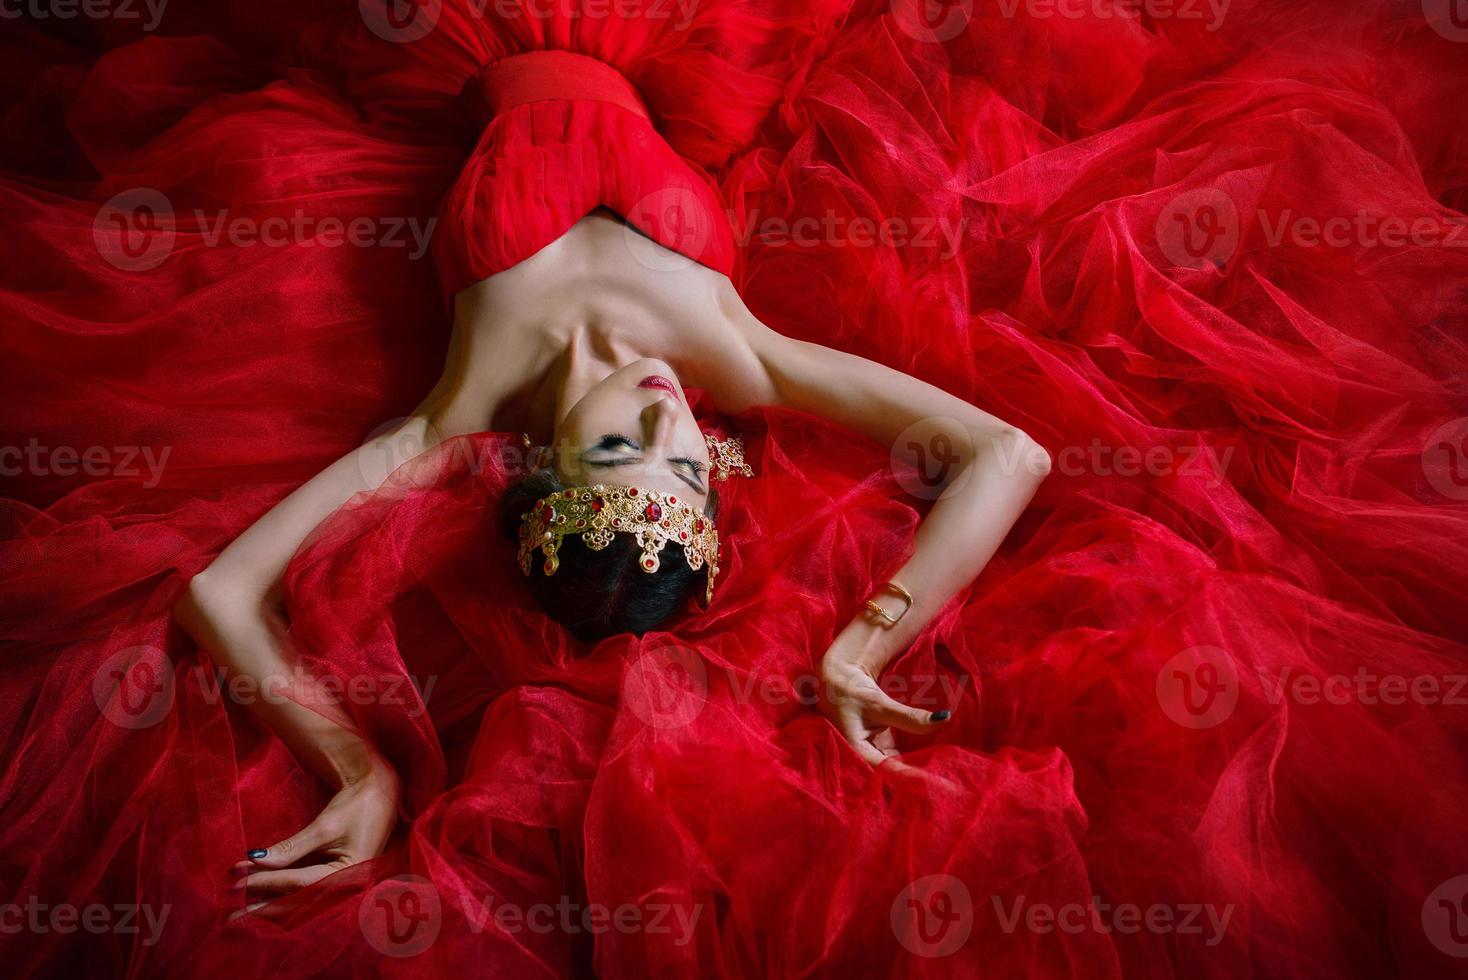 bella mujer con vestido rojo largo y corona real interior foto